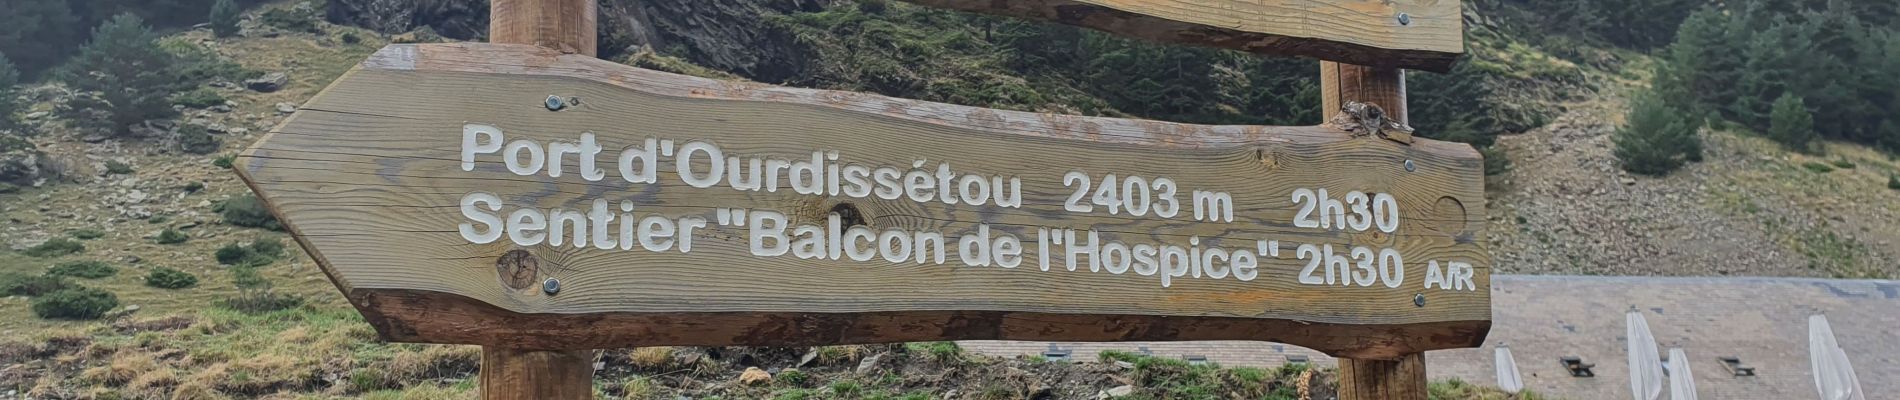 Randonnée Marche Saint-Lary-Soulan - Col d'ourdissetou boucle eco  - Photo